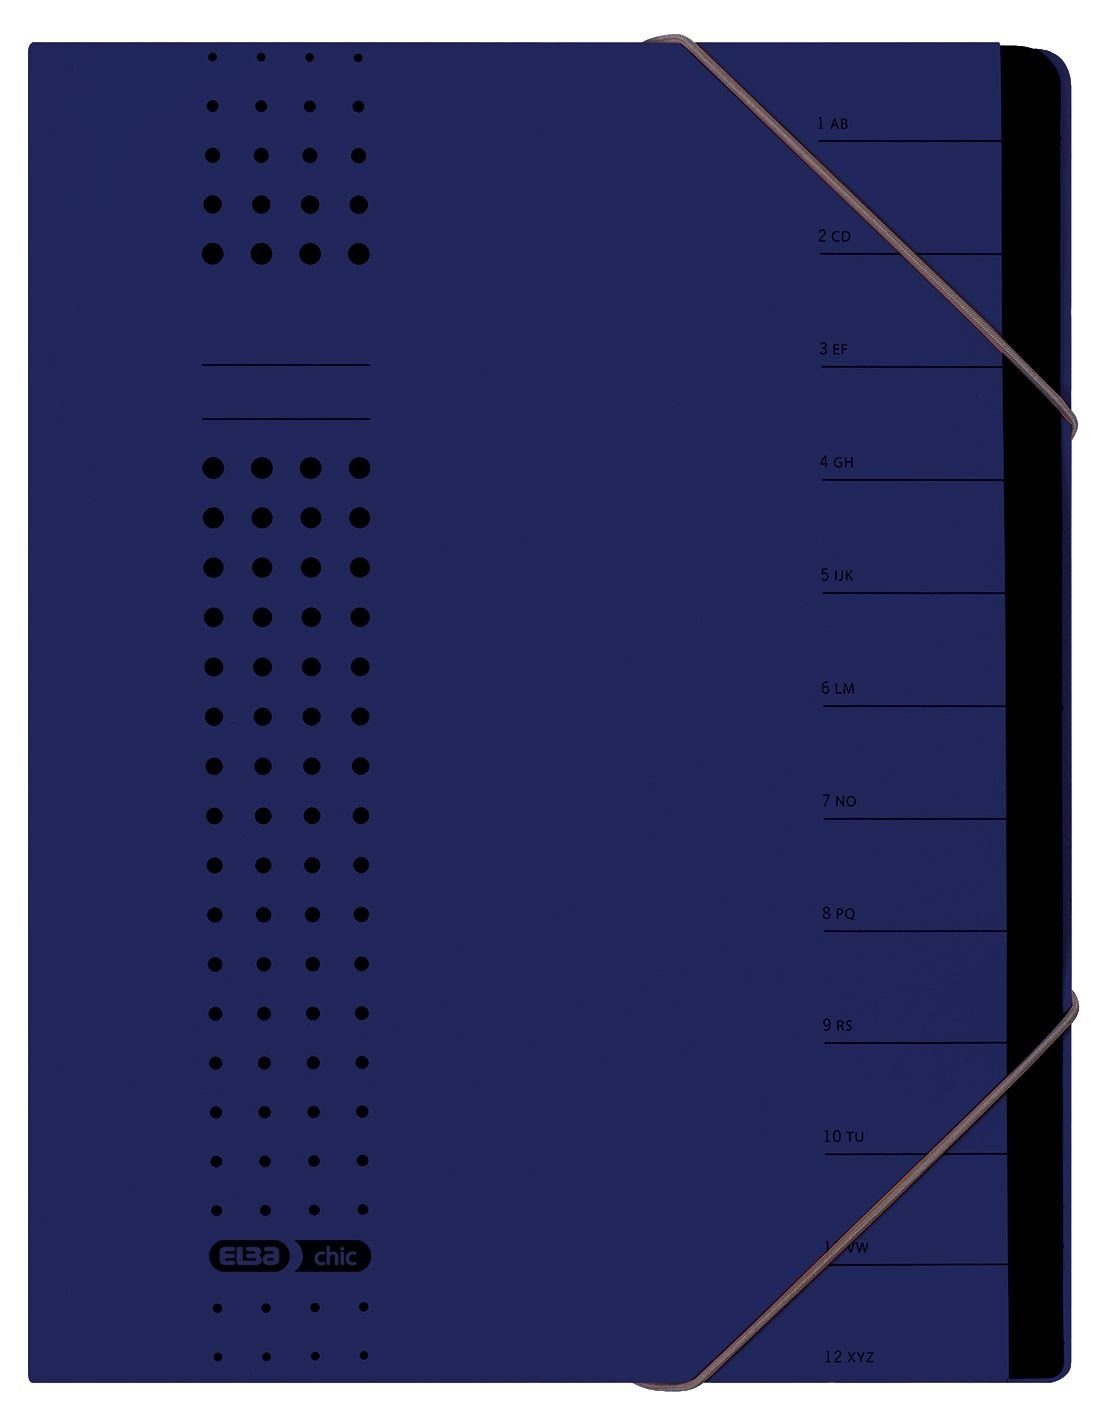 1-12, ELBA dunkelblau, ELBA Fächer chic-Ordnungsmappe, A4 Karton Schreibmappe